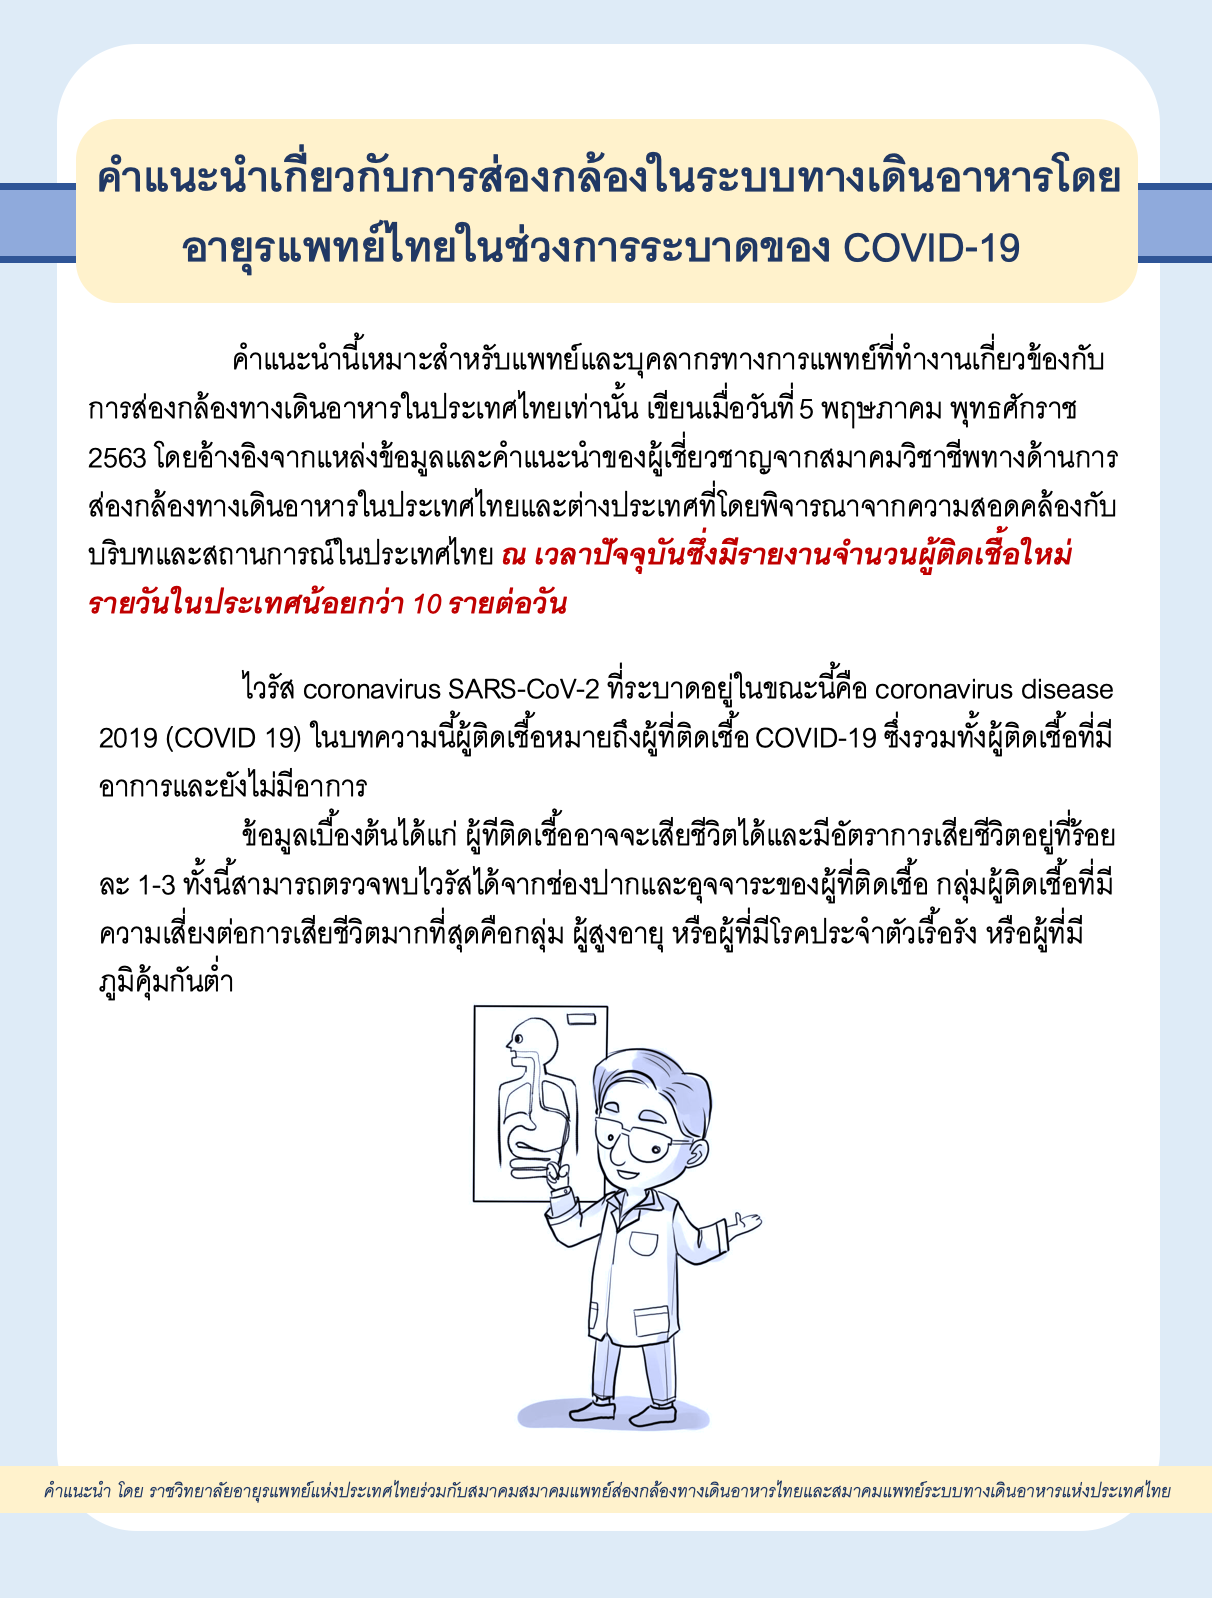 คำแนะนำเกี่ยวกับการส่องกล้องในระบบทางเดินอาหารโดยอายุรแพทย์ไทยในช่วงการระบาดของ  COVID-19 โดย ราชวิทยาลัยอายุรแพทย์แห่งประเทศไทย ร่วมกับสมาคมแพทย์ส่องกล้องทางเดินอาหารไทย และสมาคมแพทย์ระบบทางเดินอาหารแห่งประเทศไทย